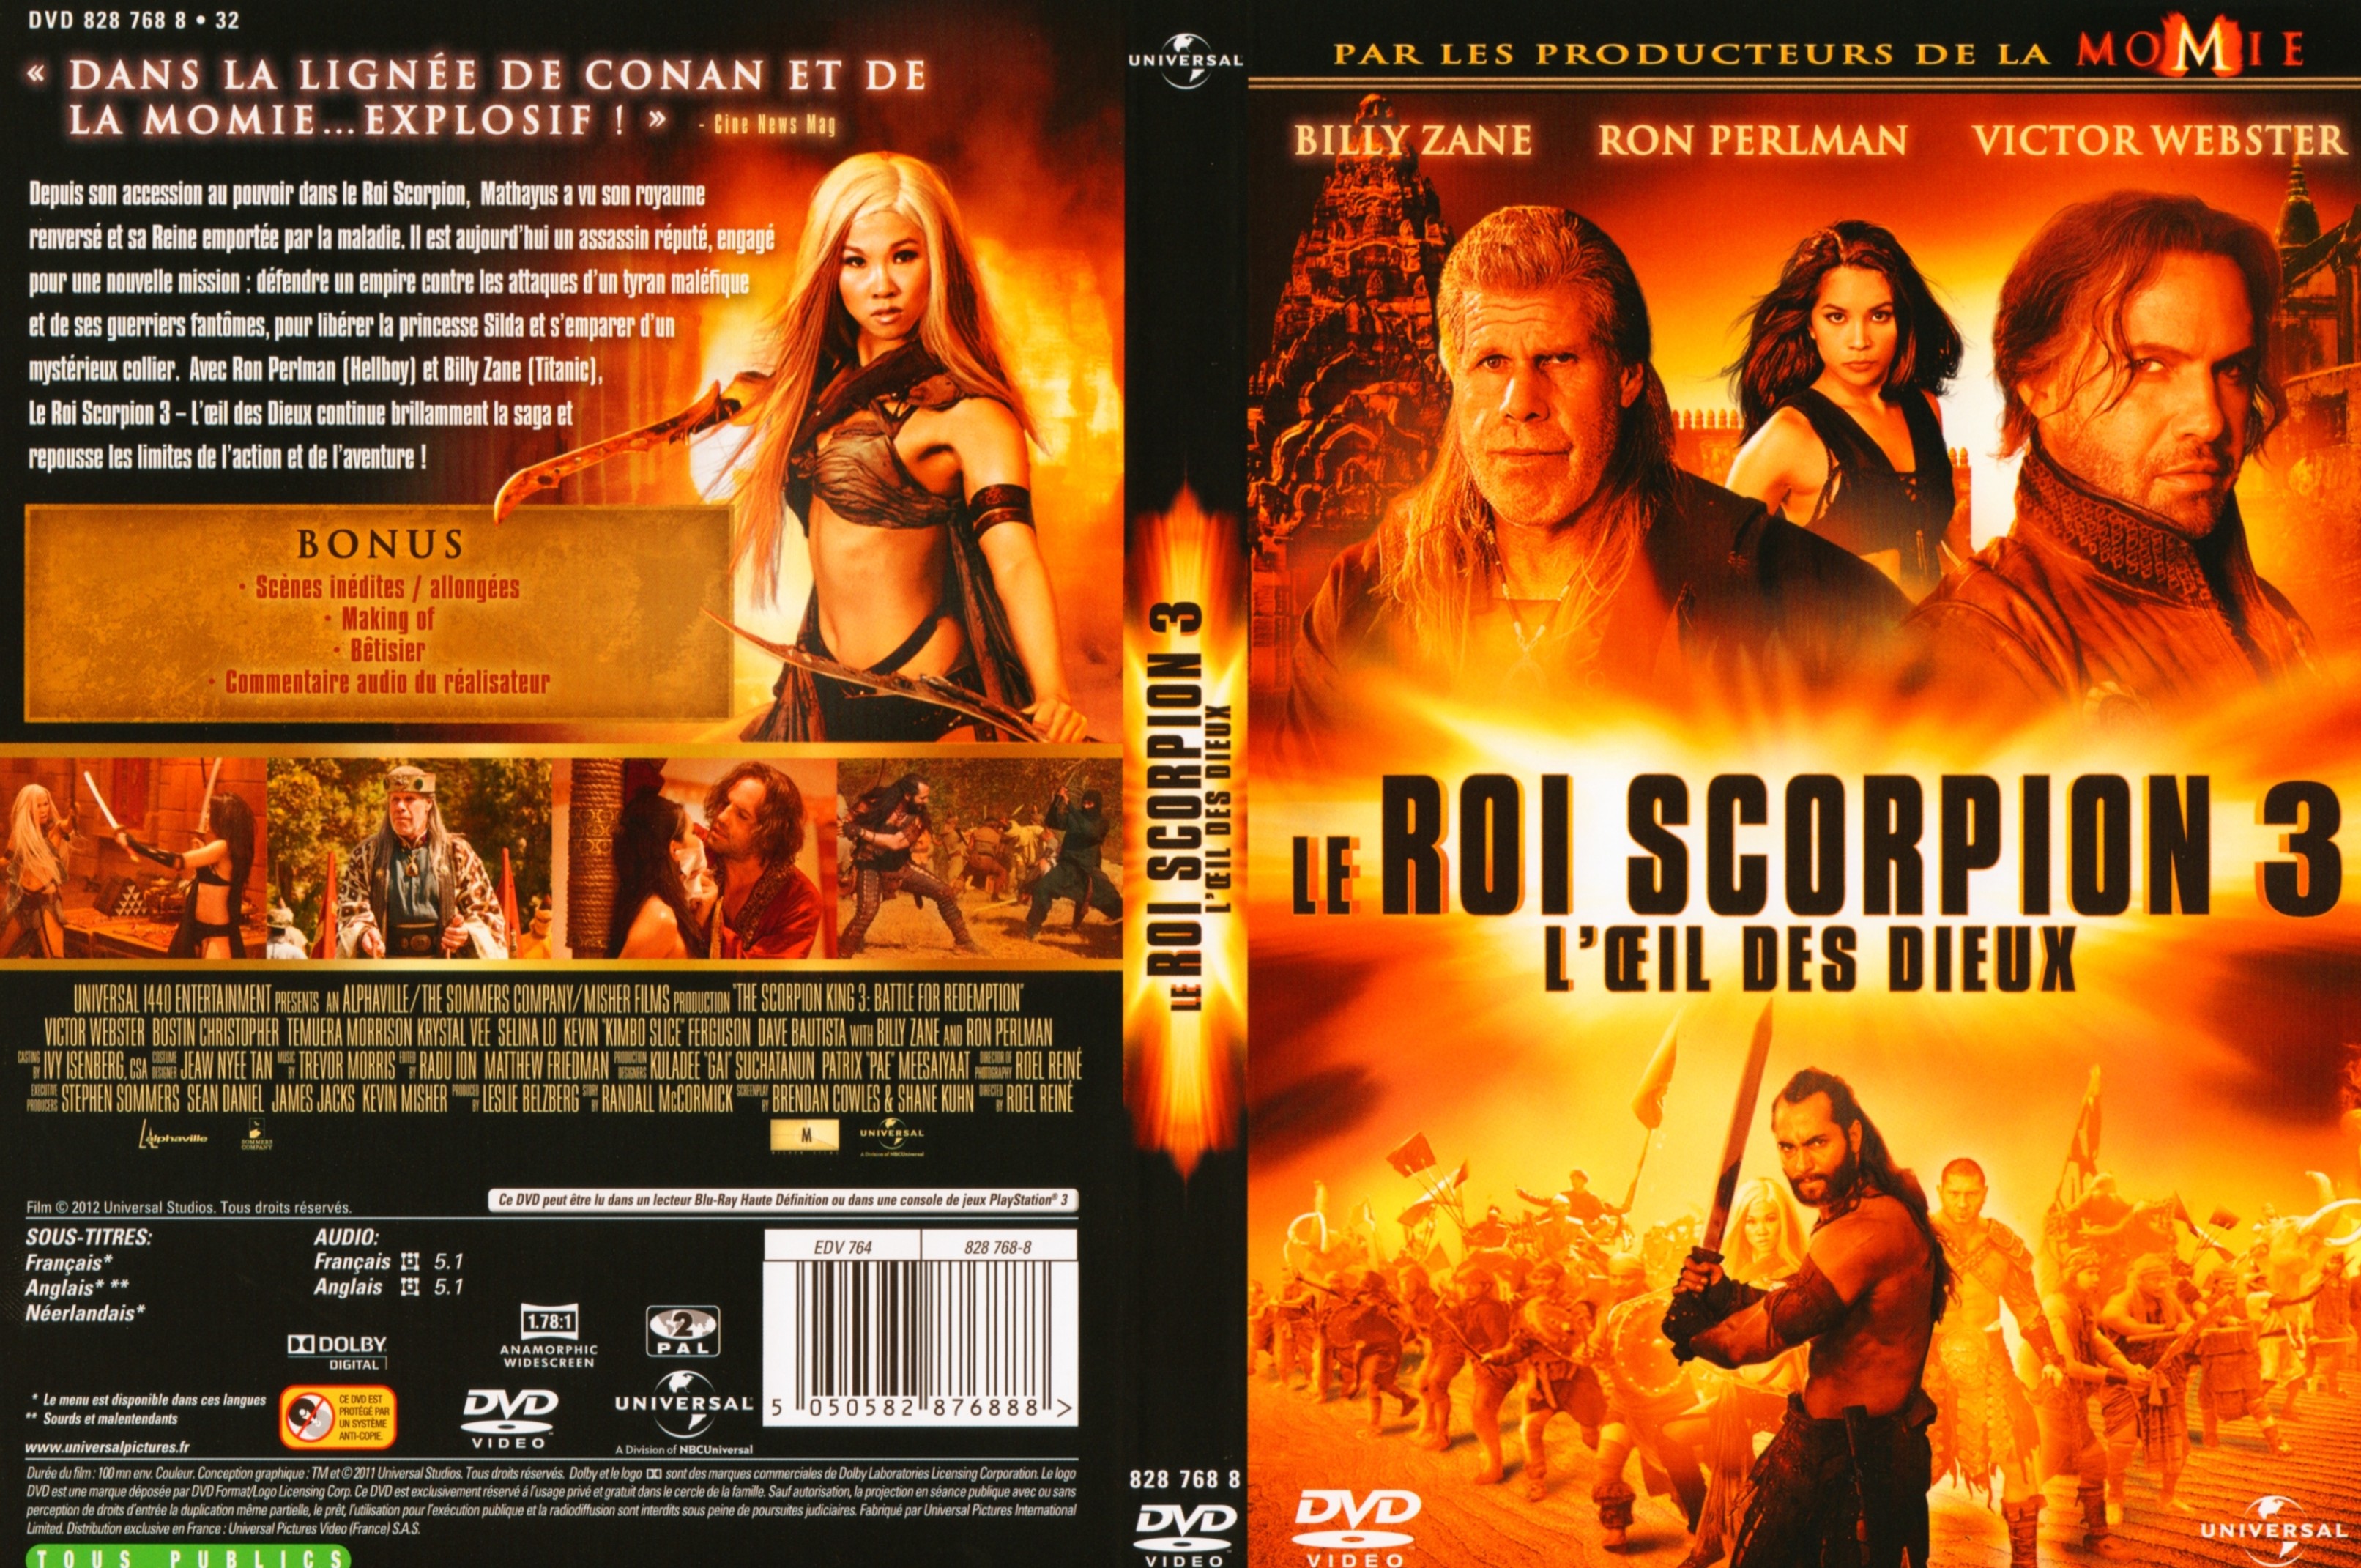 Jaquette DVD Le roi scorpion 3